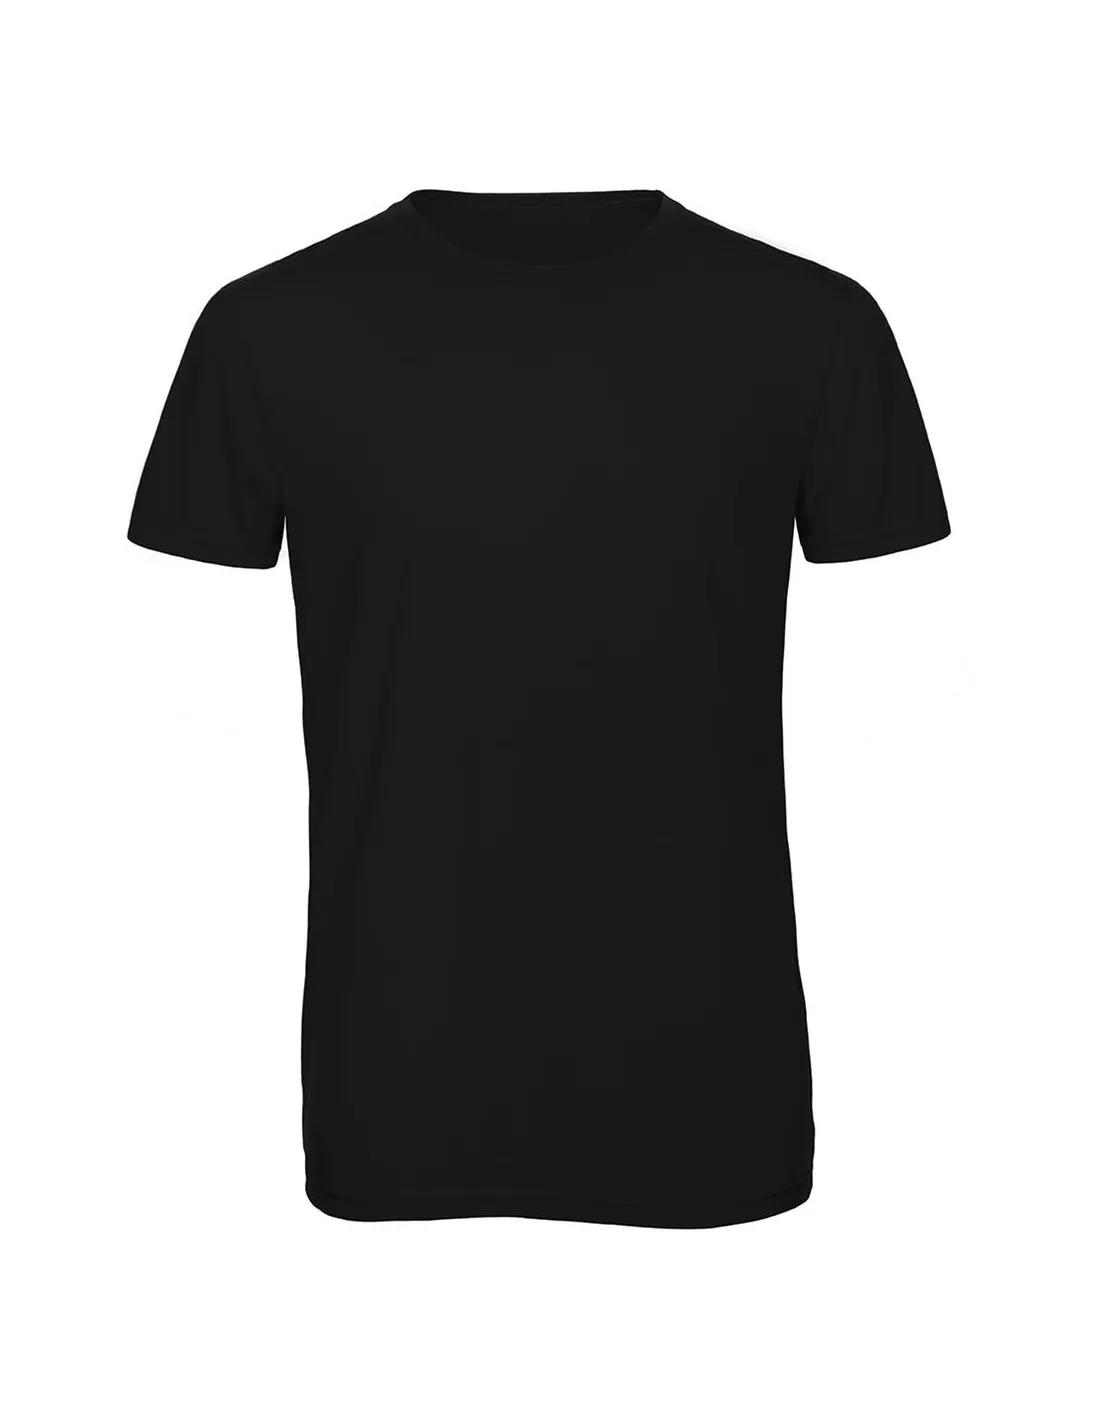 Camiseta Triblend/men